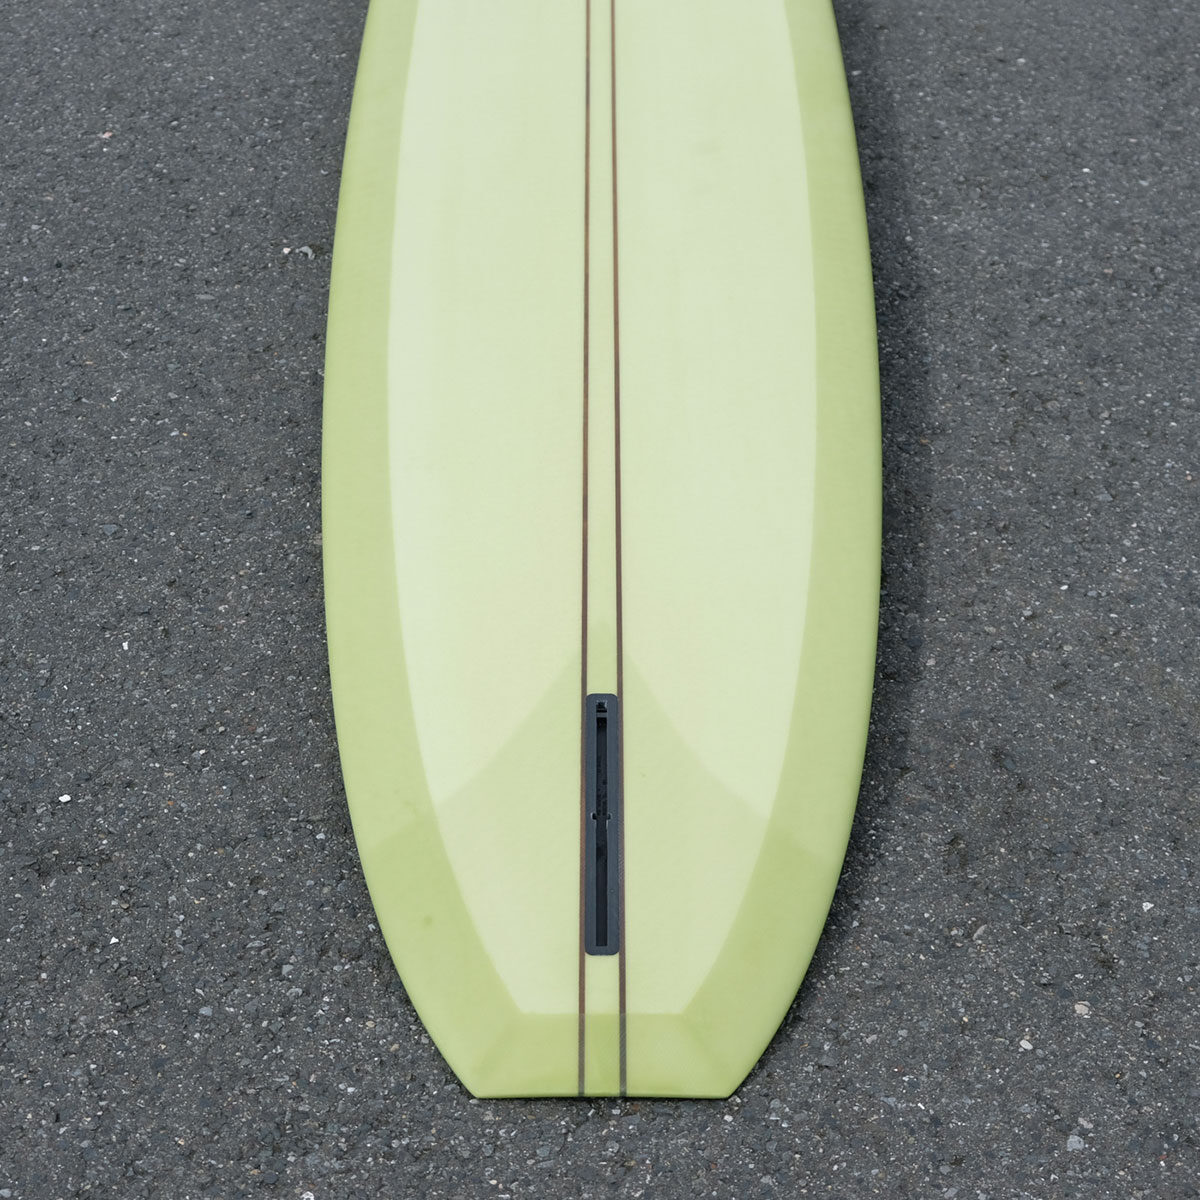 EC SURFBOARDS - Sand Crawler | NAKISURF ナキサーフボード 